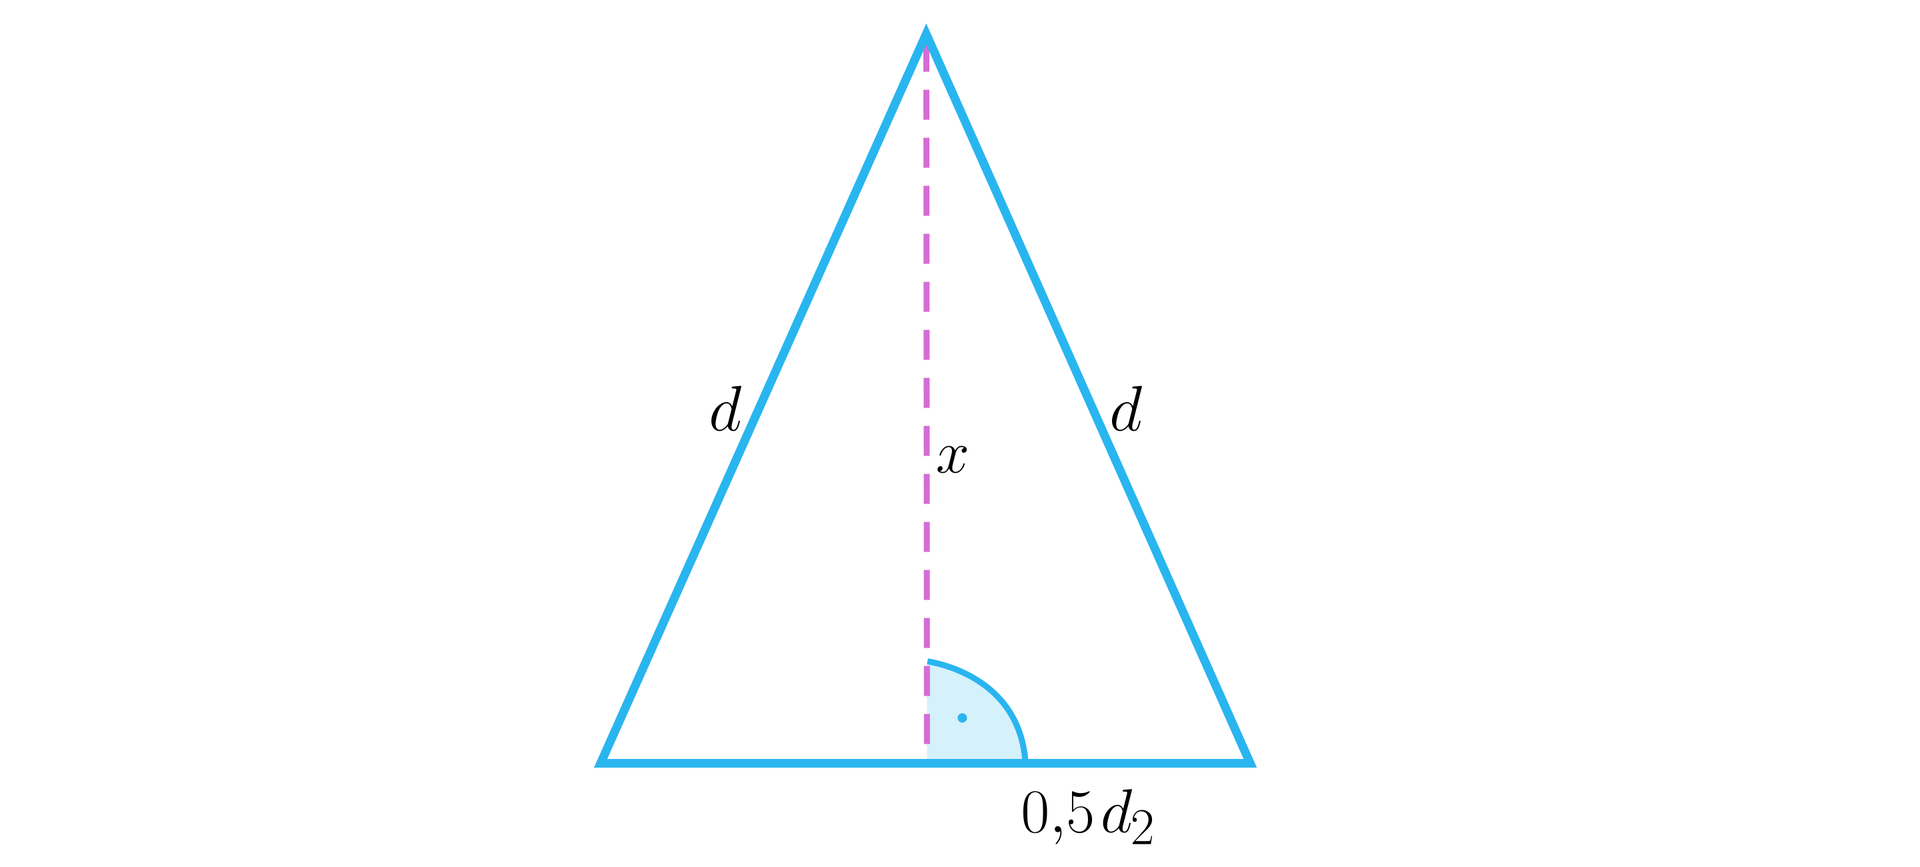 Ilustracja przedstawia trójkąt równoramienny o ramionach o długości d każde i o wysokości między nimi oznaczonej jako x. Wysokość dzieli dolną podstawę na pół, czyli na dwa odcinki o długości jedna druga razy d indeks dolny dwa.